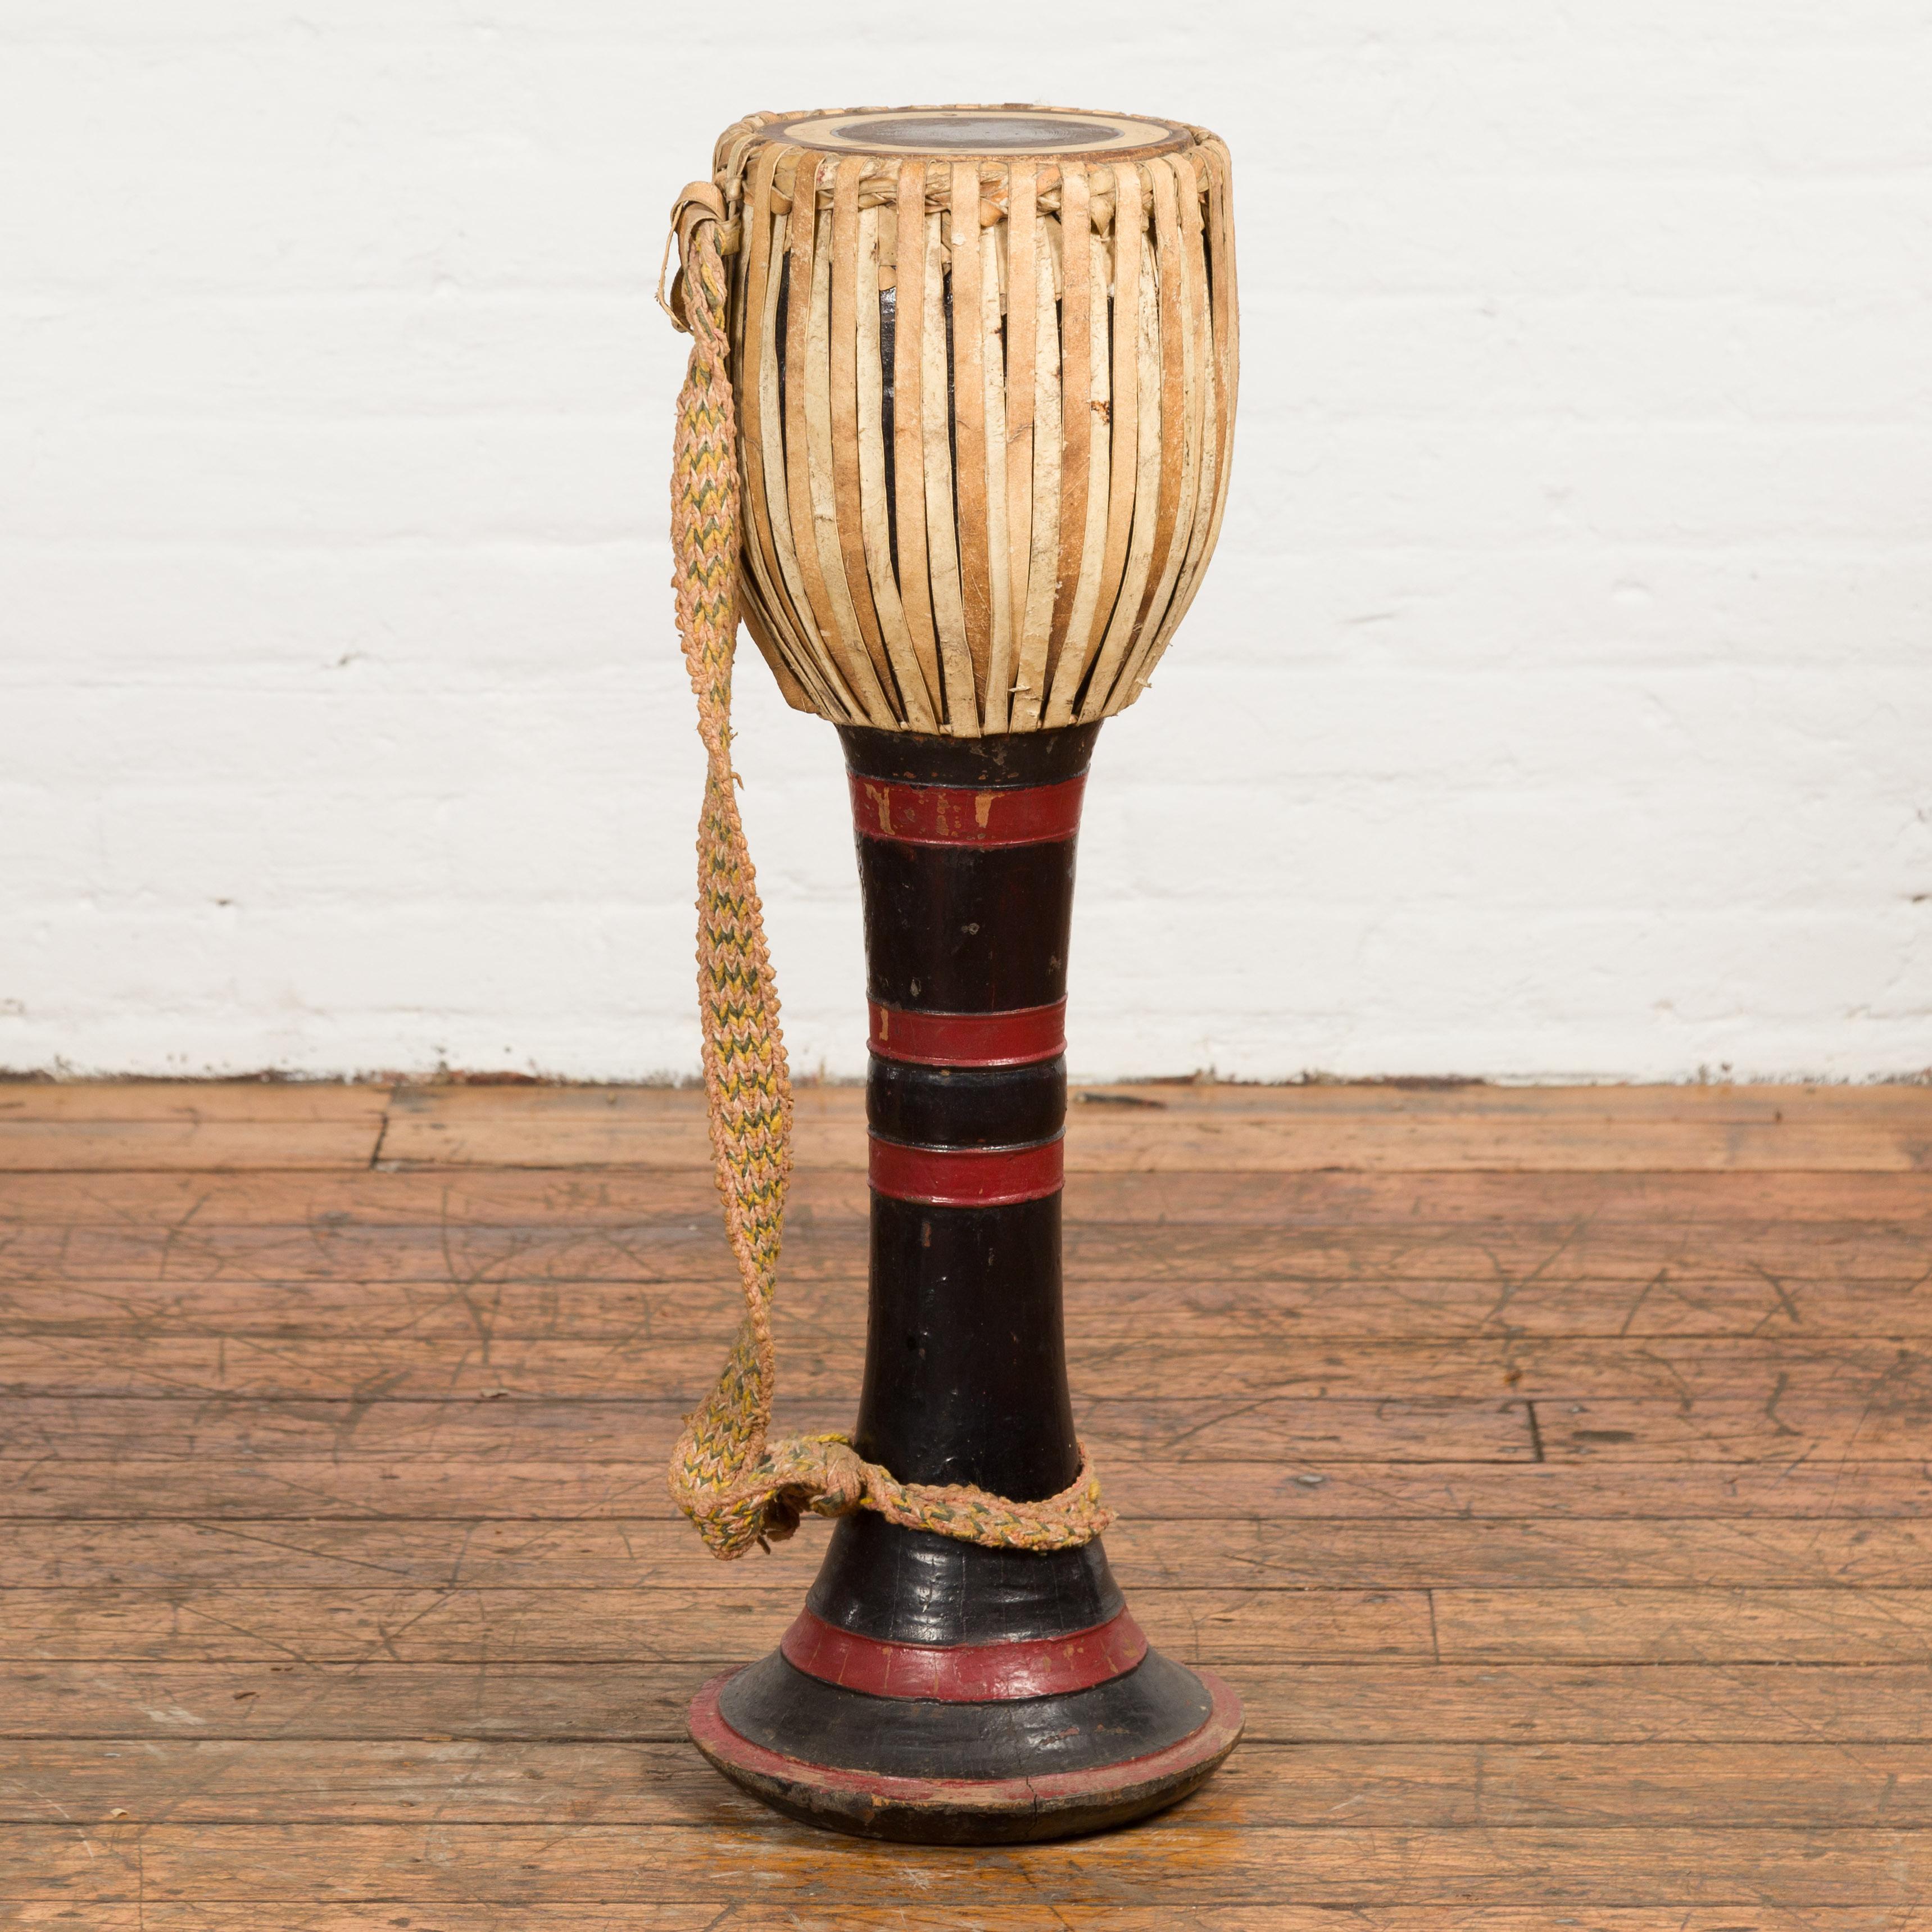 Tambour en teck en forme de gobelet Ozi de la tribu birmane, datant de la fin du XIXe siècle, laqué en rouge et noir et recouvert d'une peau de veau. Créé en Birmanie à la fin du XIXe siècle, ce tambour tribal, appelé tambour Ozi, se caractérise par